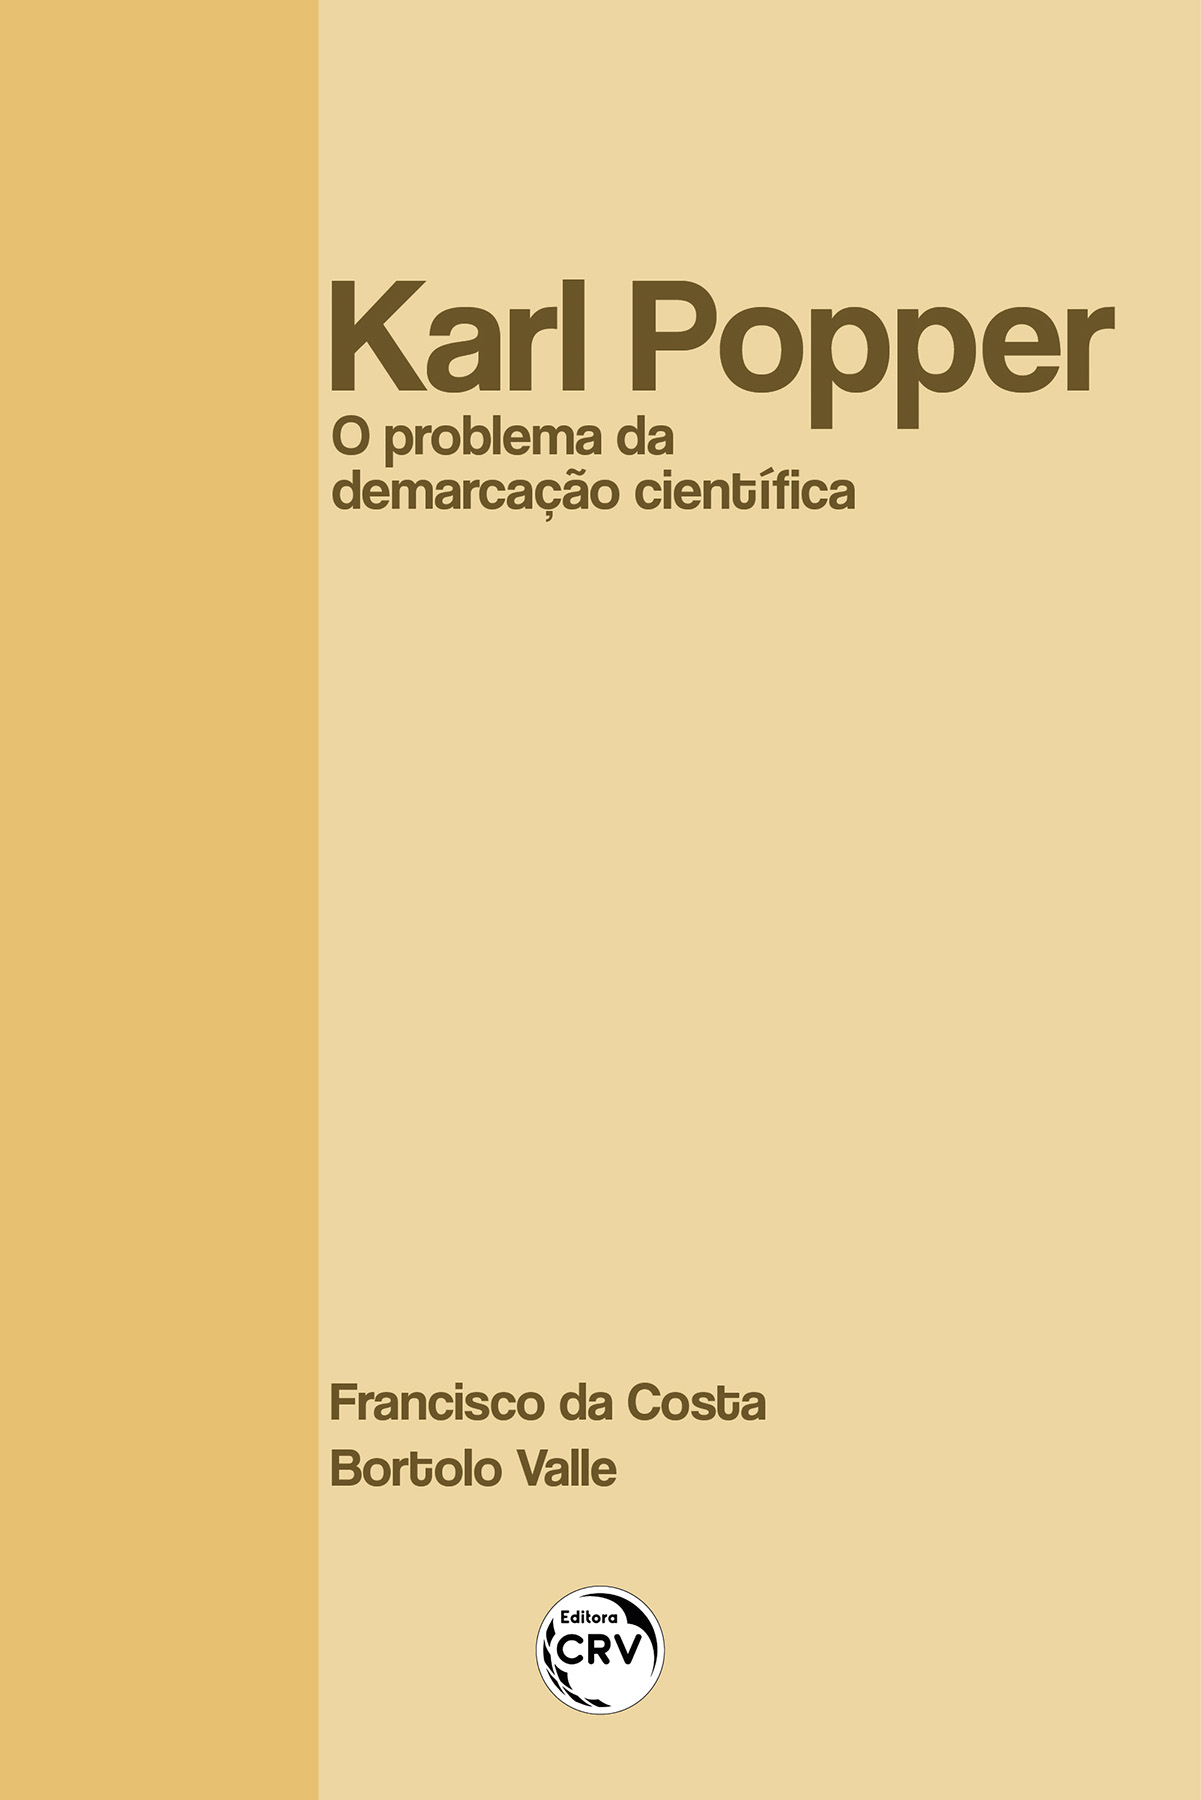 Capa do livro: KARL POPPER <br> O PROBLEMA DA DEMARCAÇÃO CIENTÍFICA